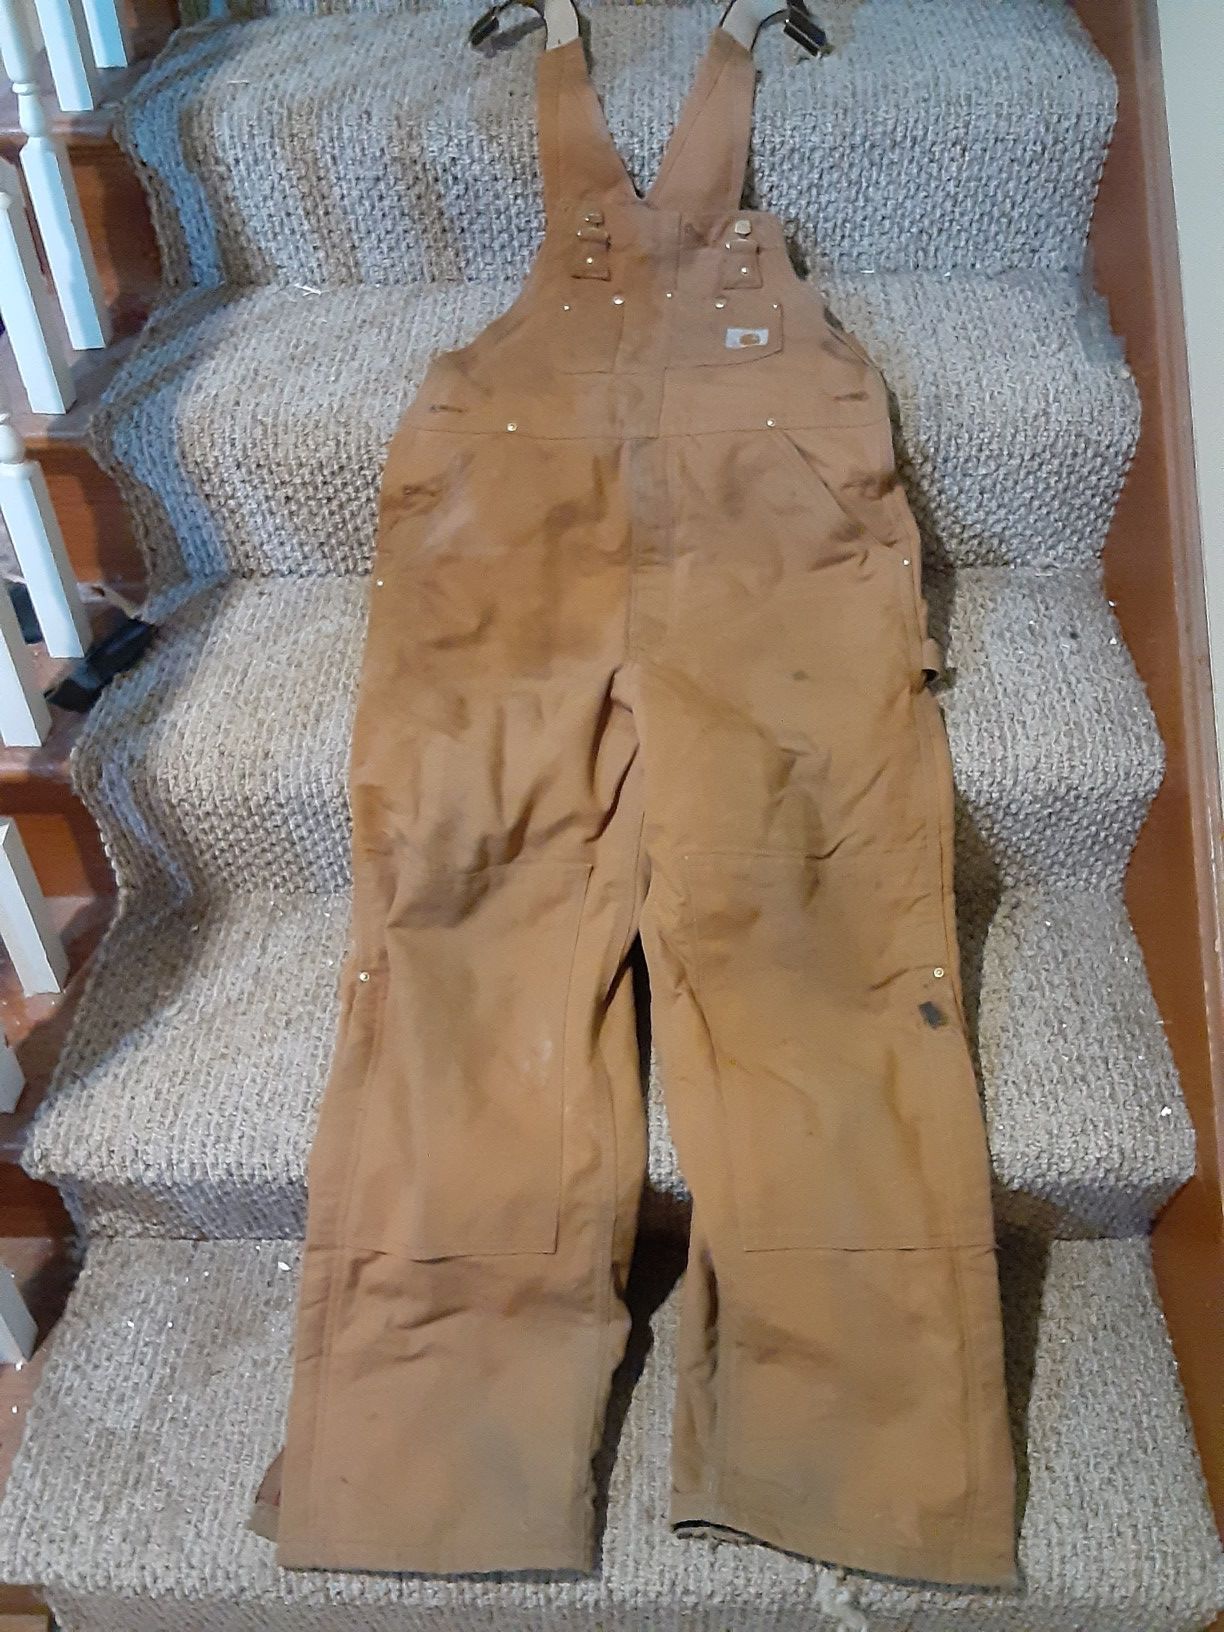 Carhartt fleece lined overalls